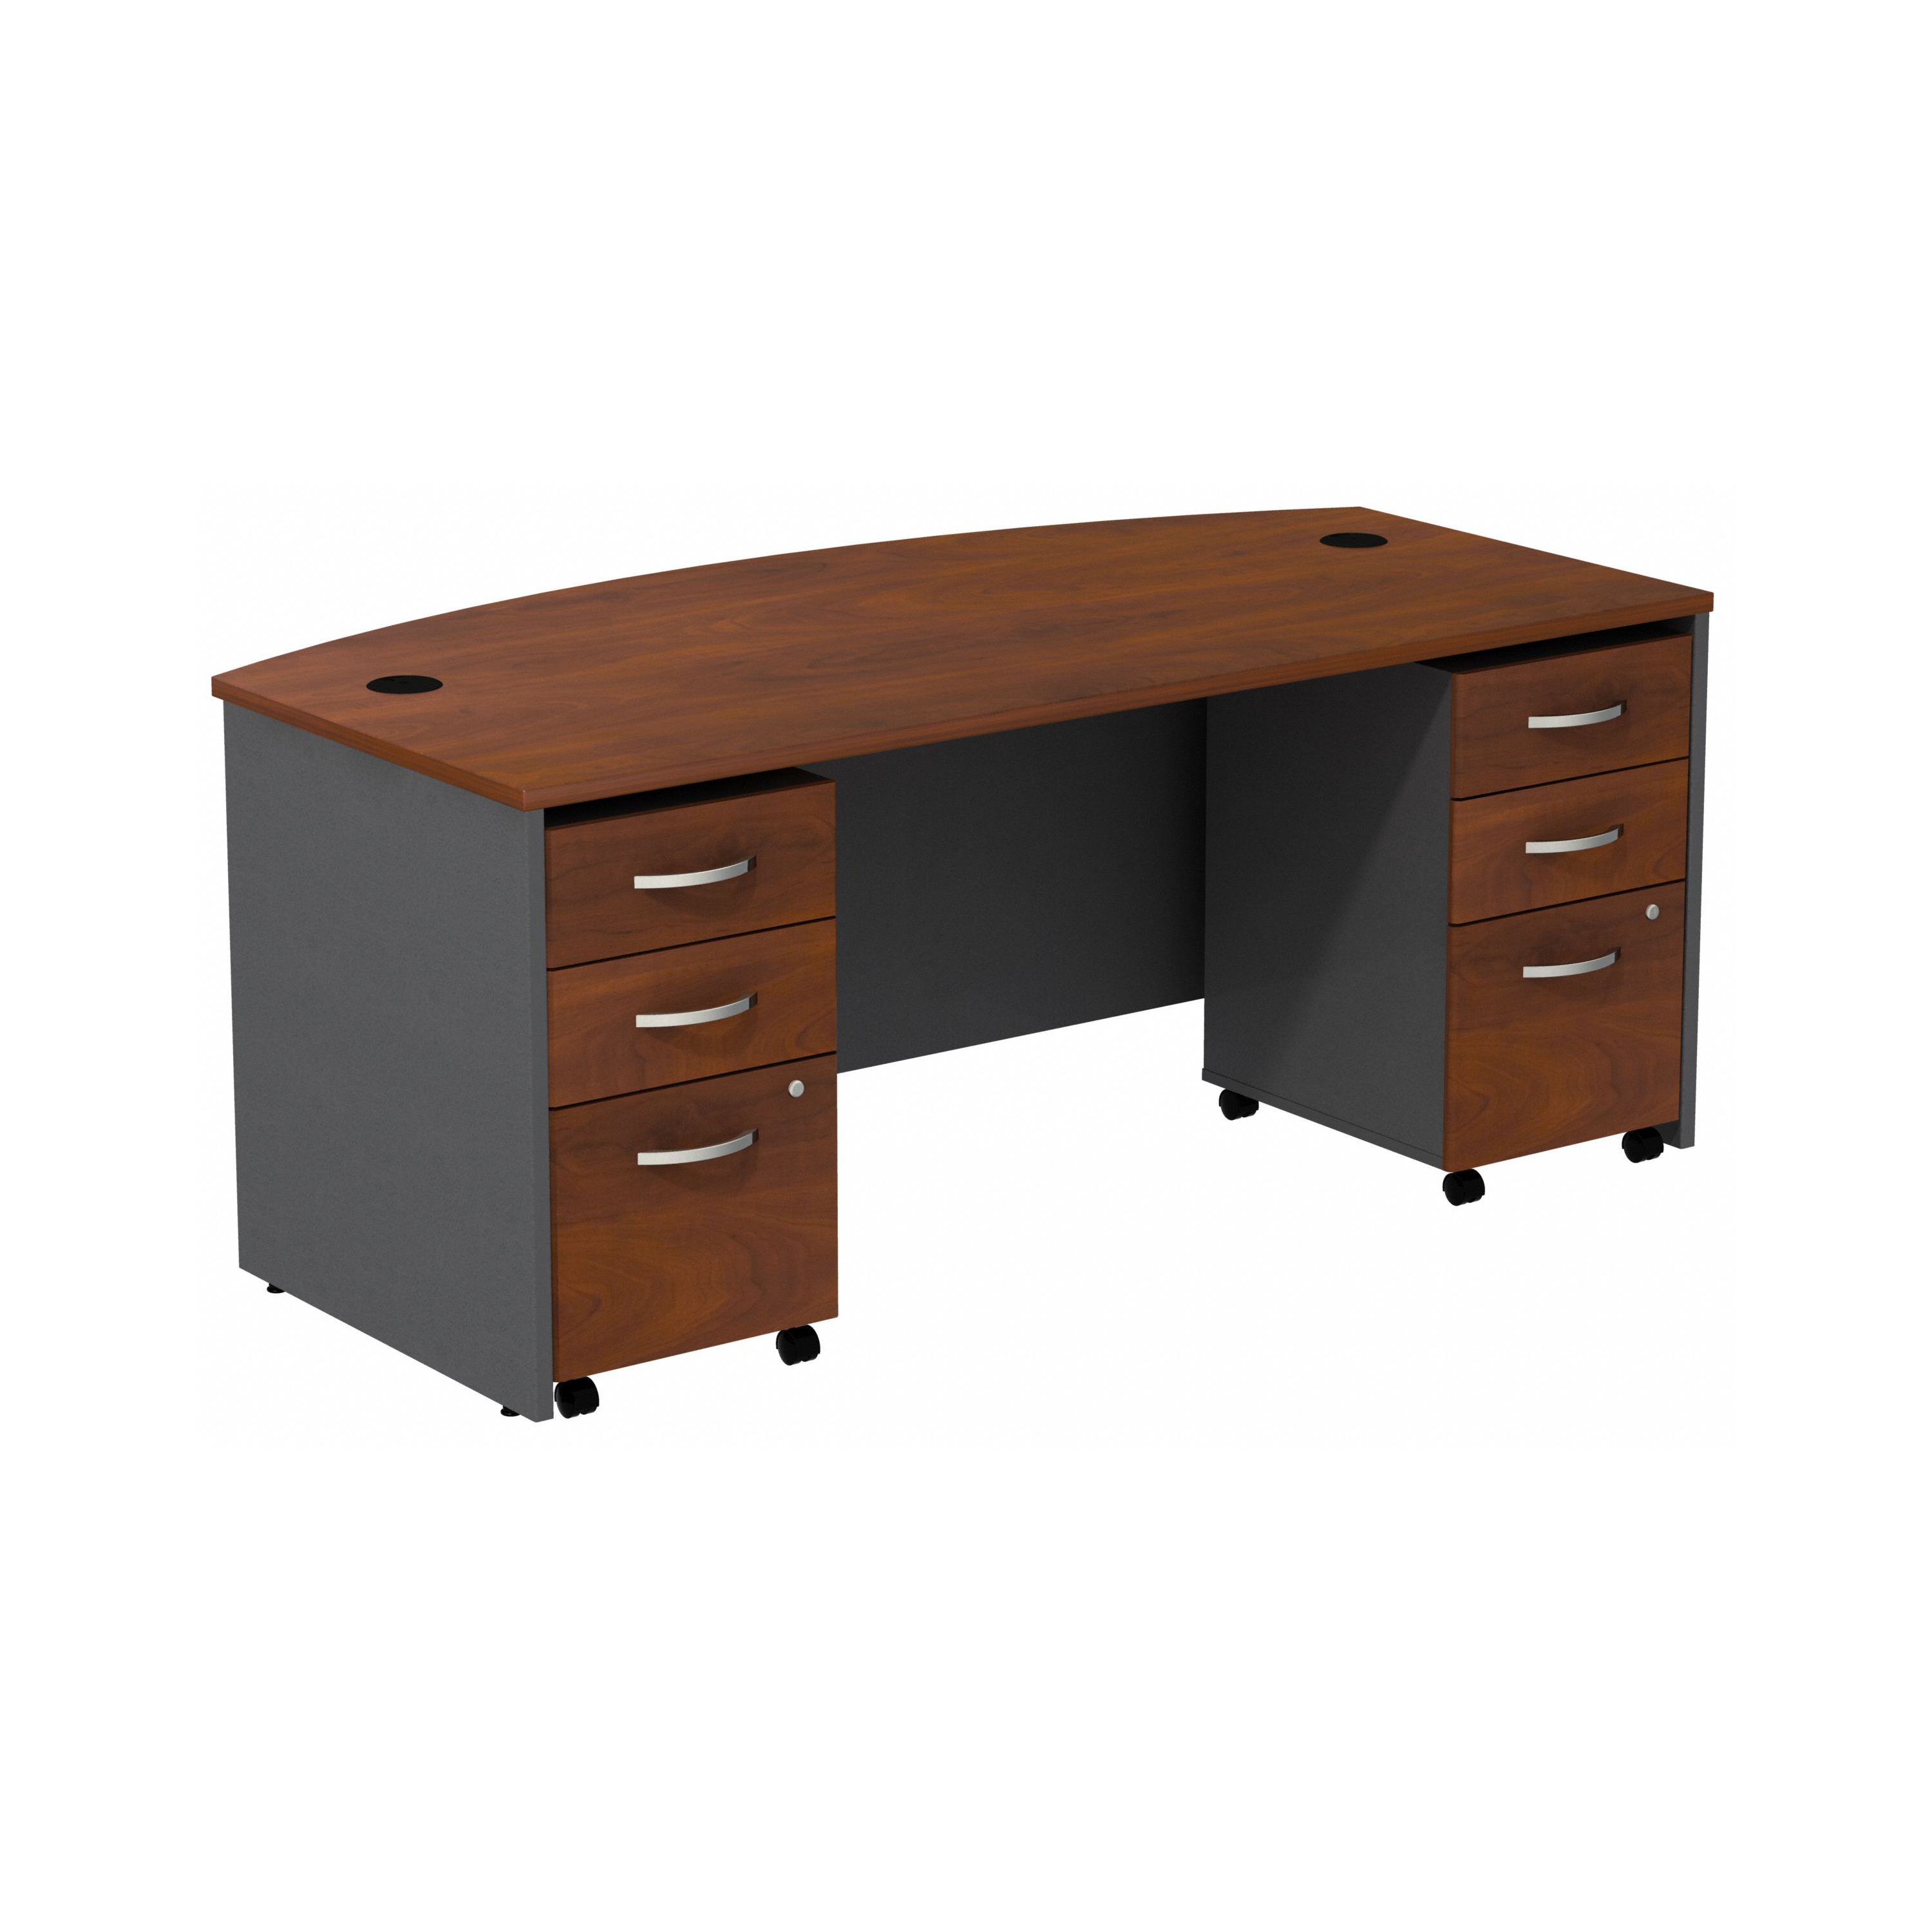 Shop Bush Business Furniture Series C Bow Front Desk with (2) 3 Drawer Mobile Pedestals 02 SRC013HCSU #color_hansen cherry